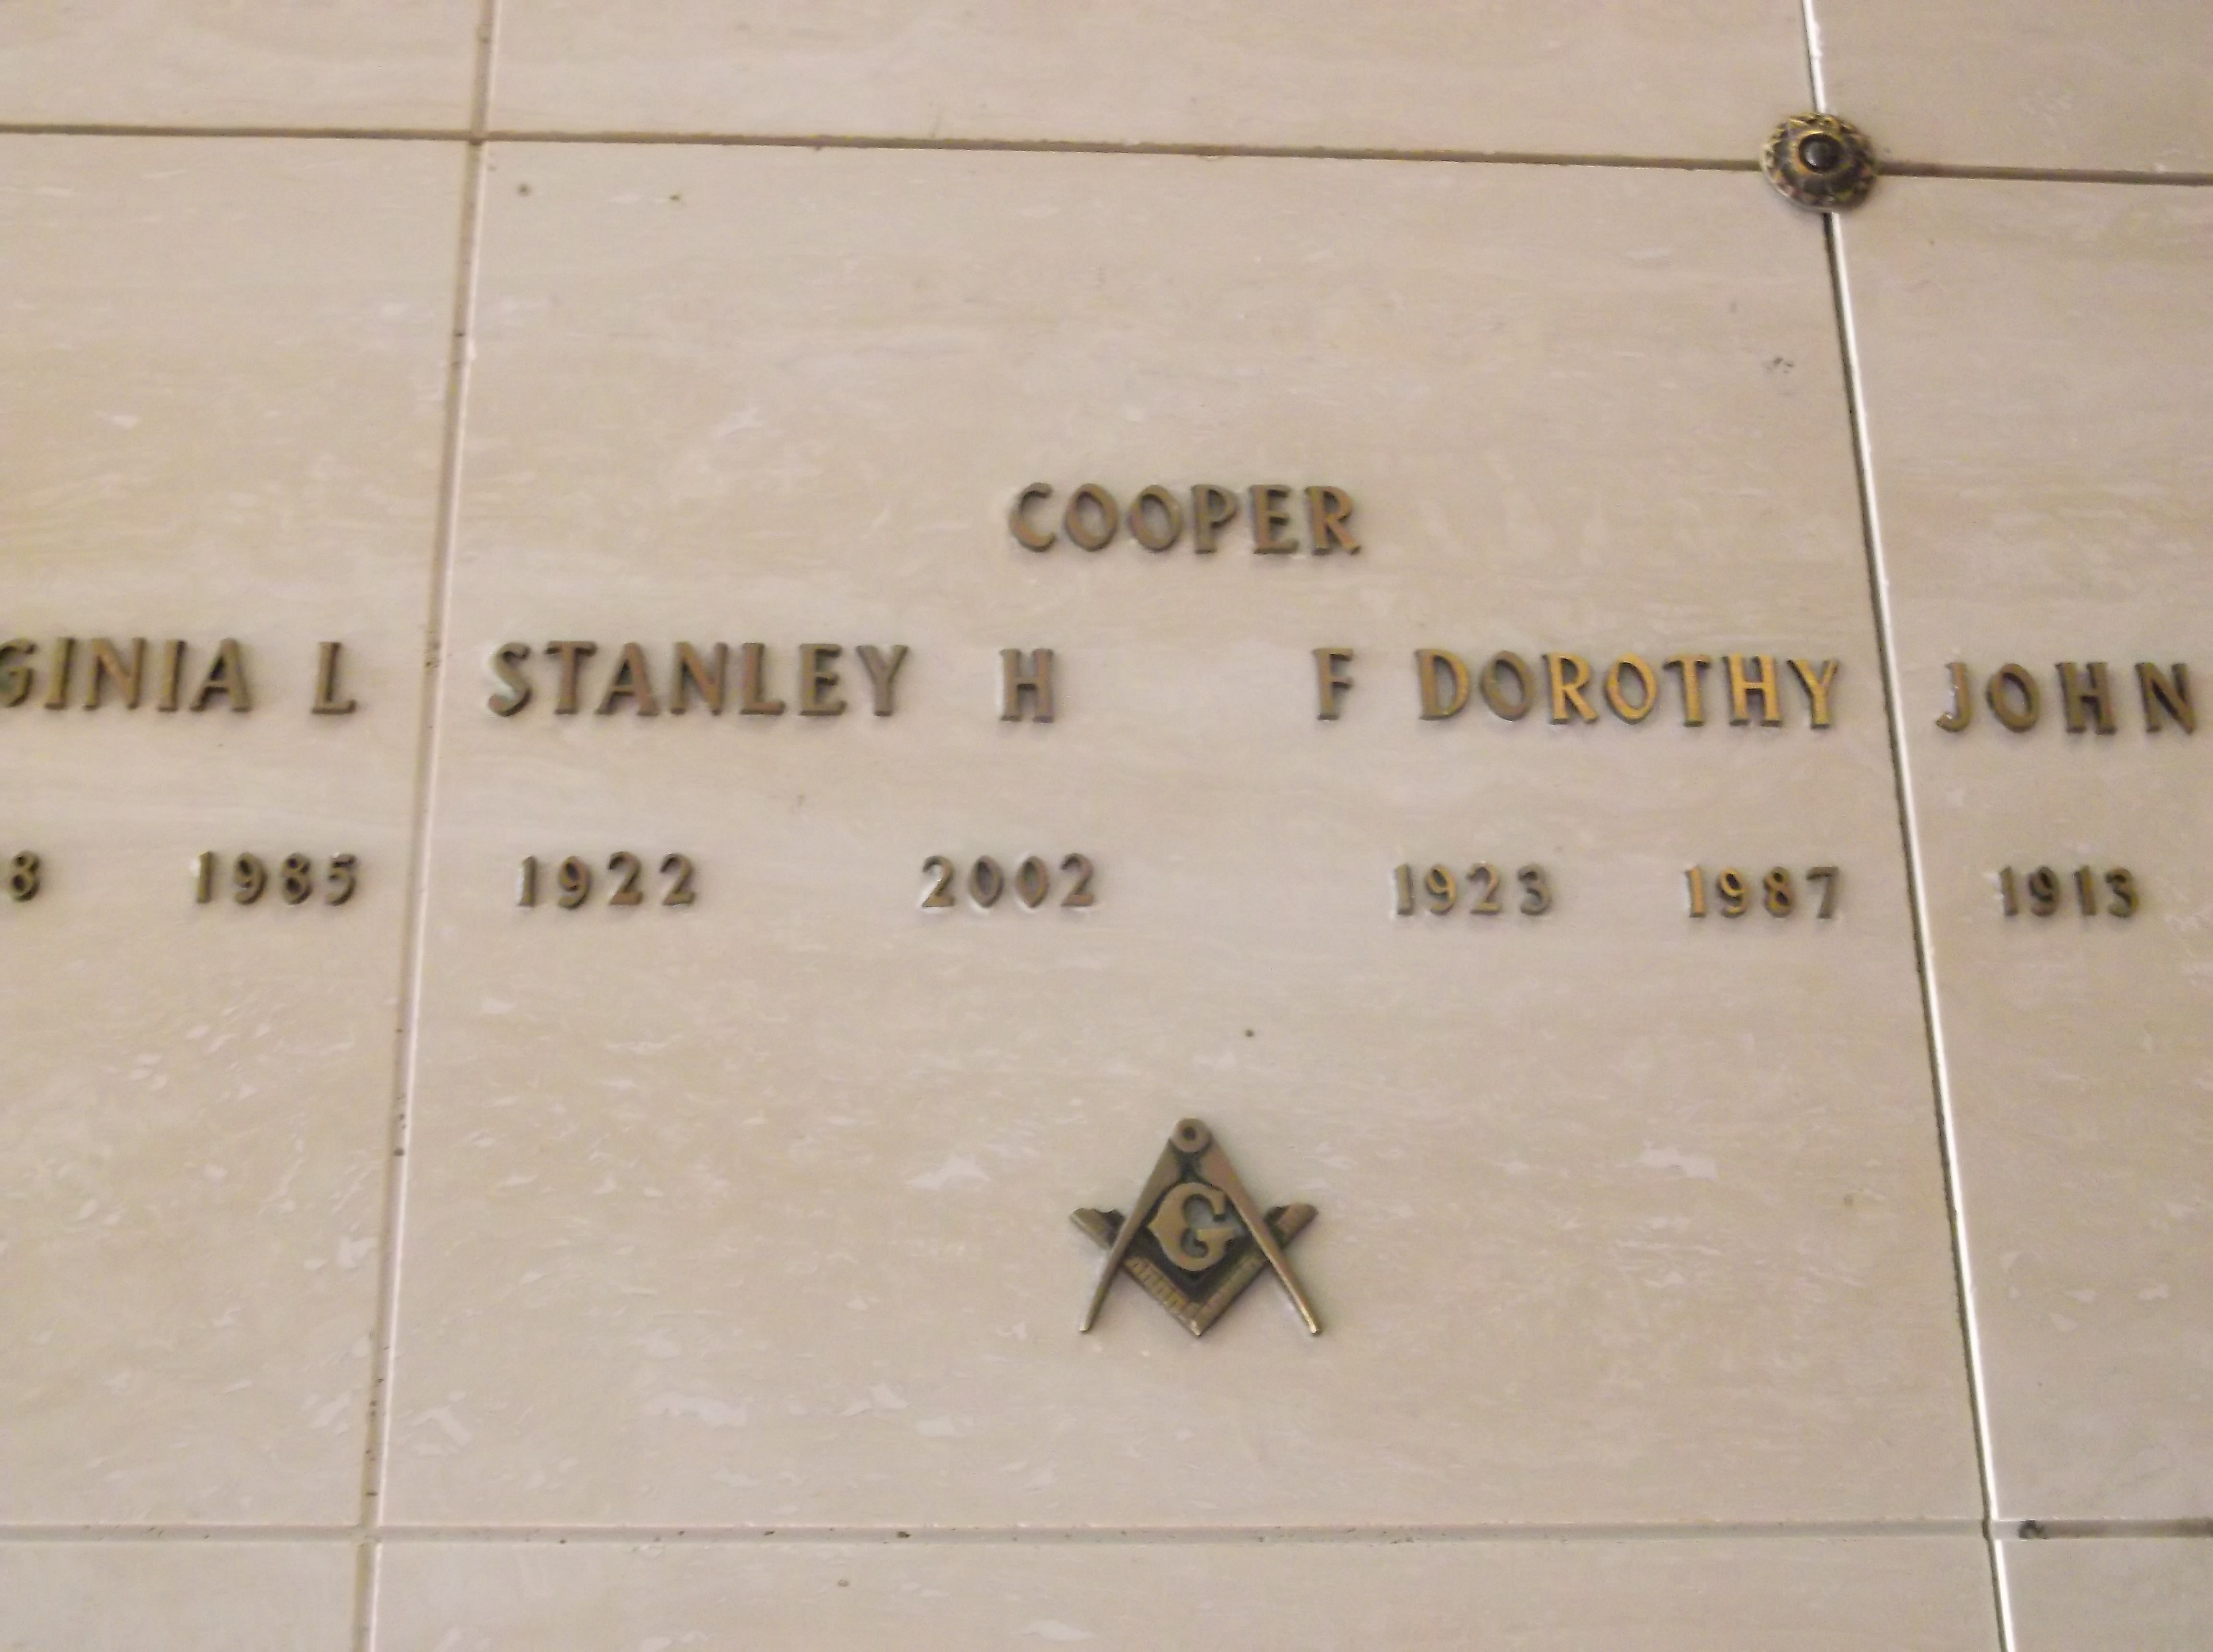 Stanley H Cooper